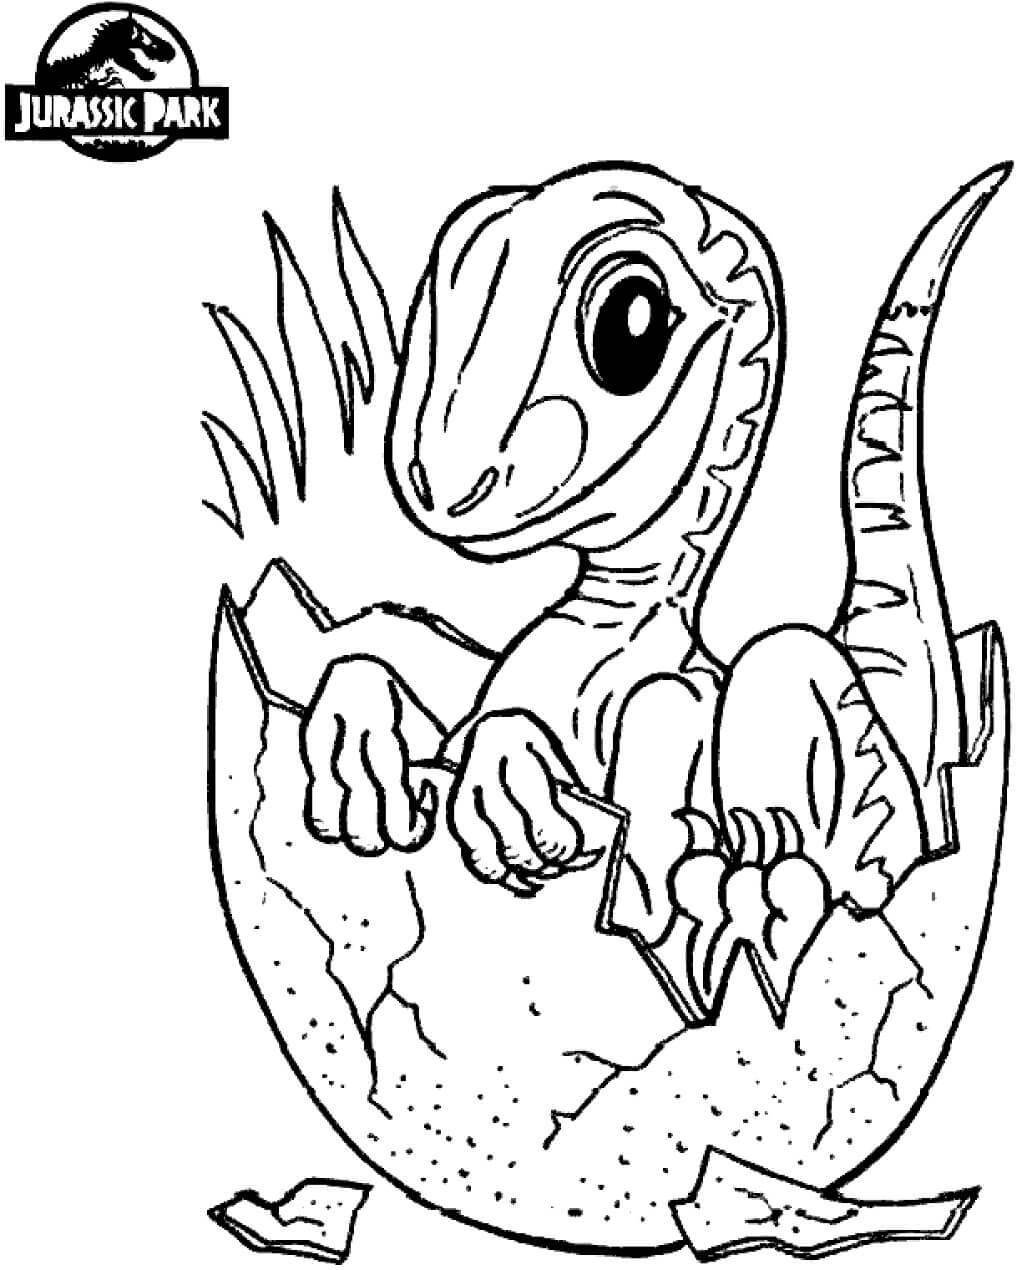 Bebé Dinosaurio en el Mundo Jurásico para colorir